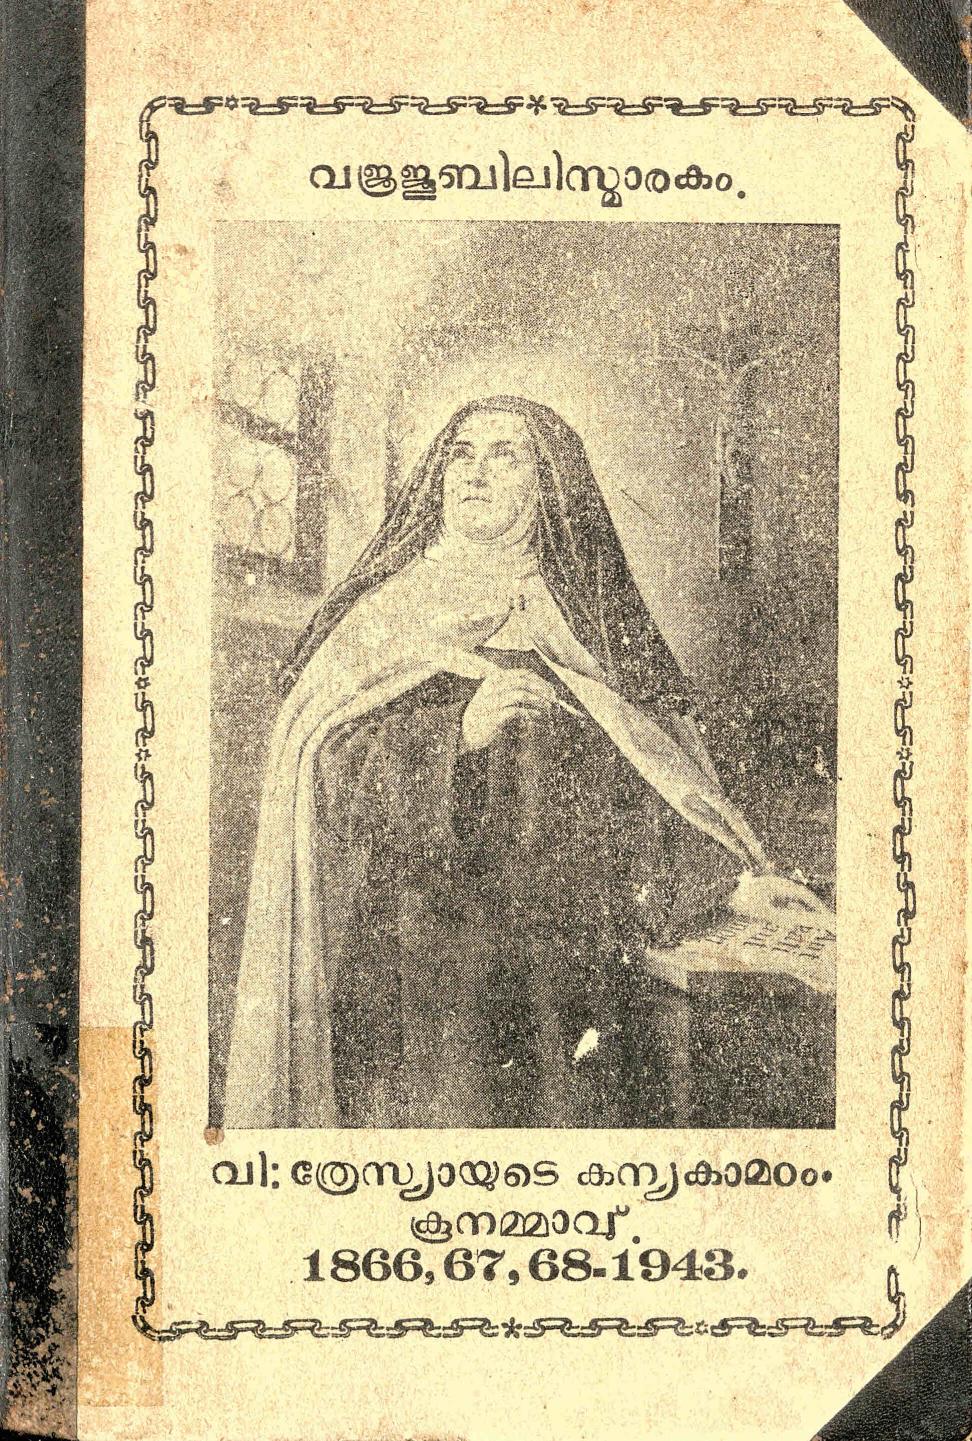  1943 - വി:ത്രേസ്യായുടെ കന്യകാ മഠം - വജ്രജൂബിലി സ്മാരകം